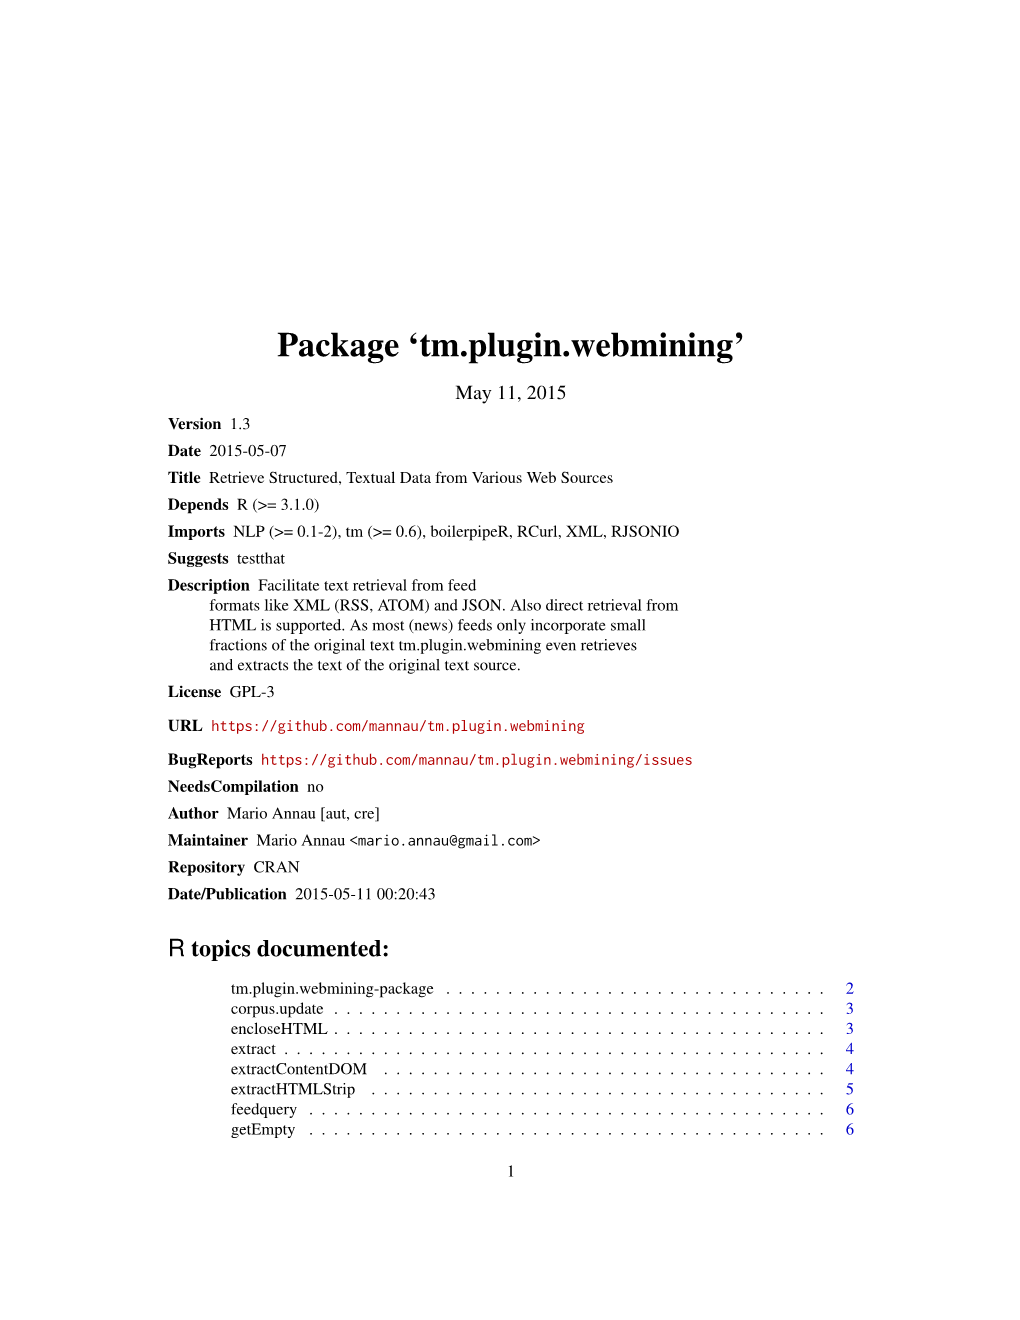 Package 'Tm.Plugin.Webmining'